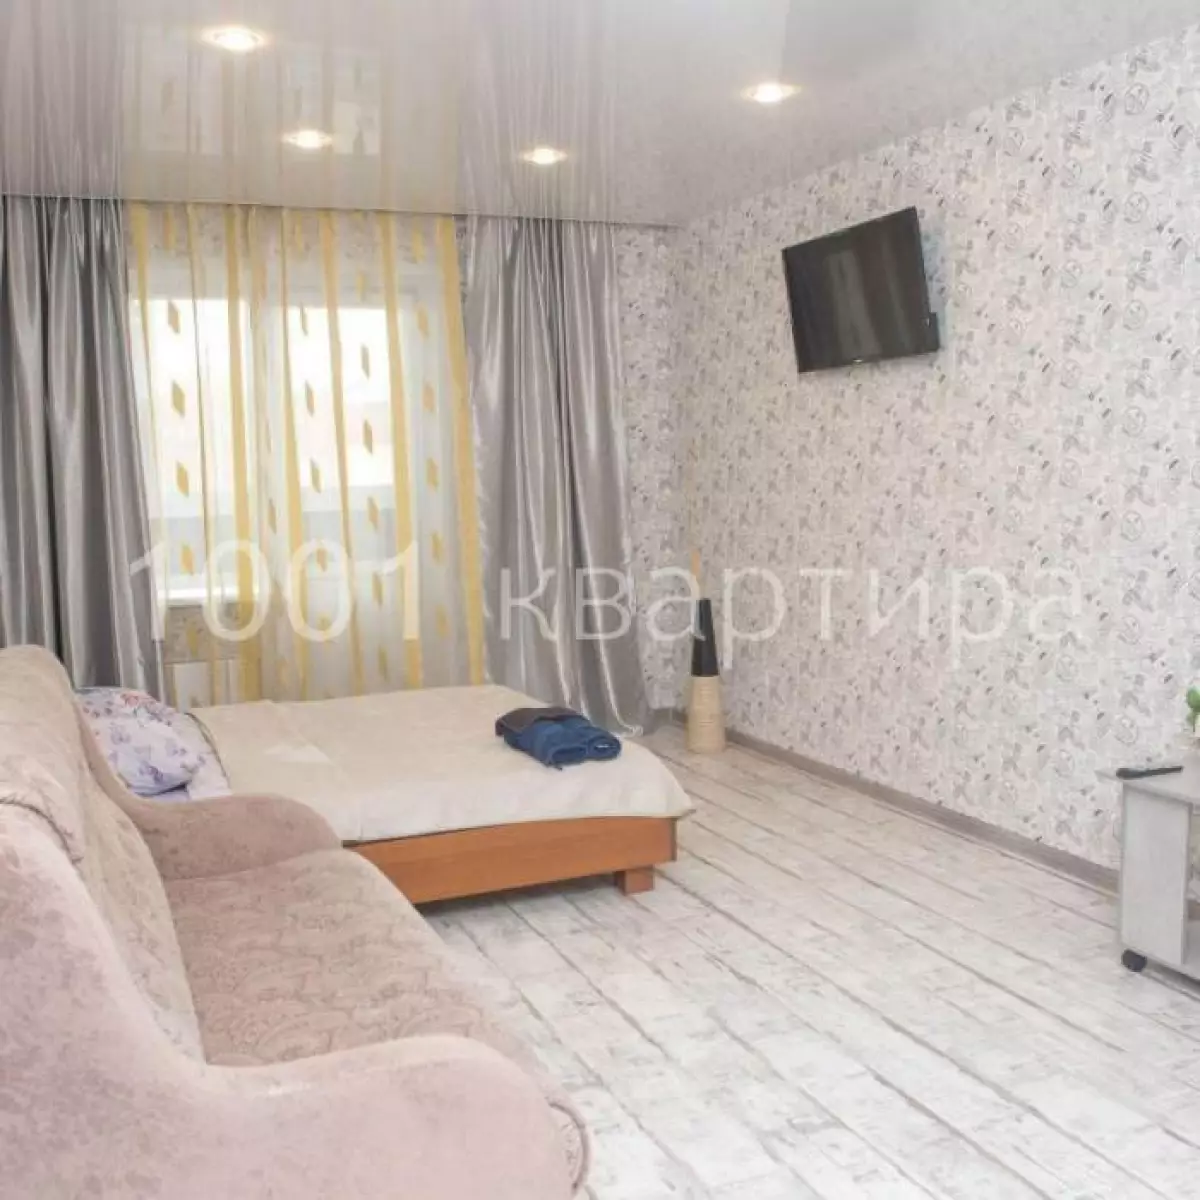 Вариант #124826 для аренды посуточно в Казани Чистопольская, д.72 на 5 гостей - фото 2